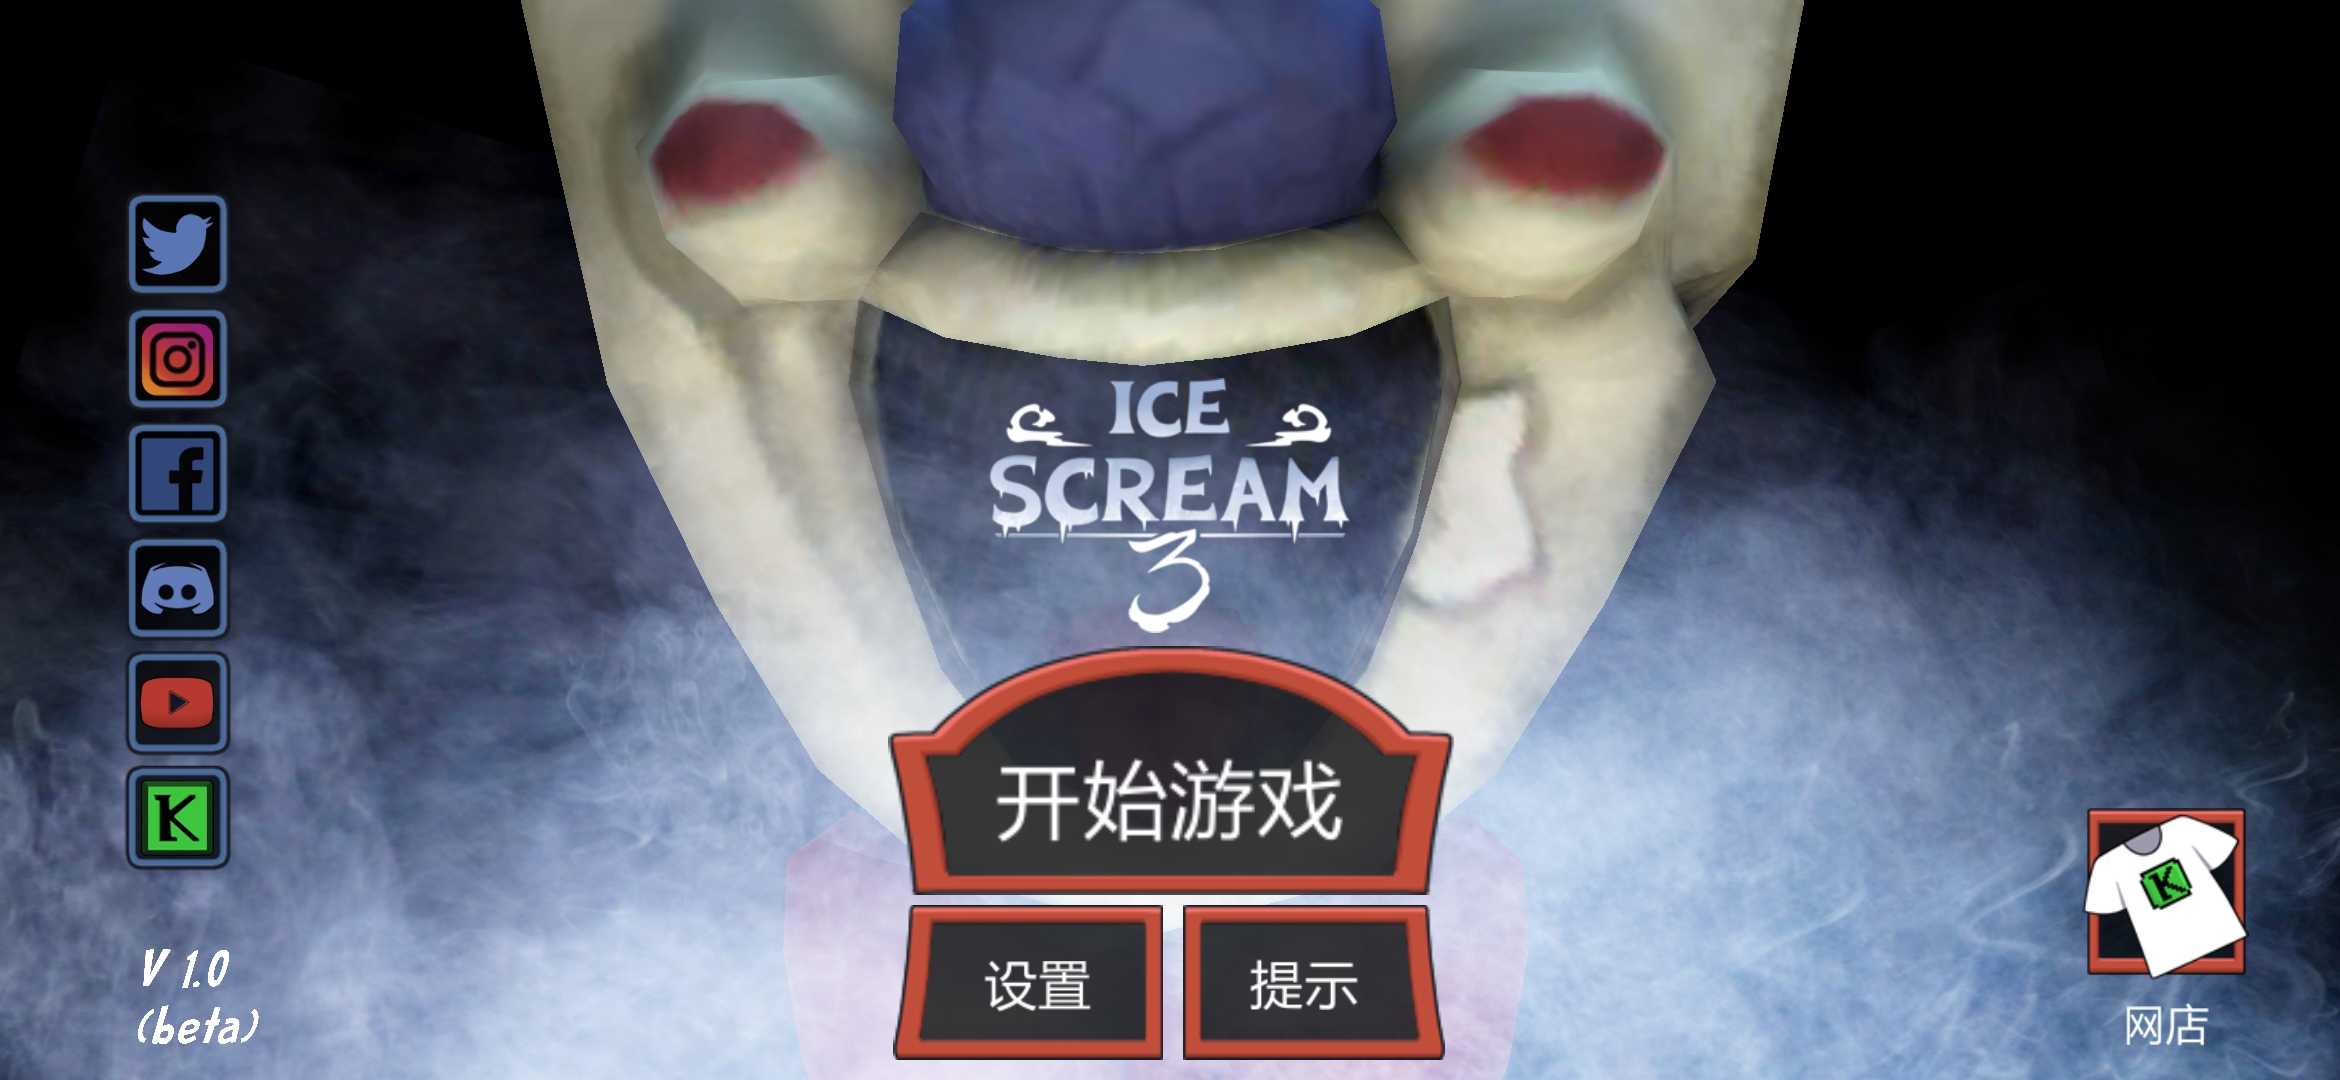 恐怖冰淇淋3无敌版贵州手机app开发公司